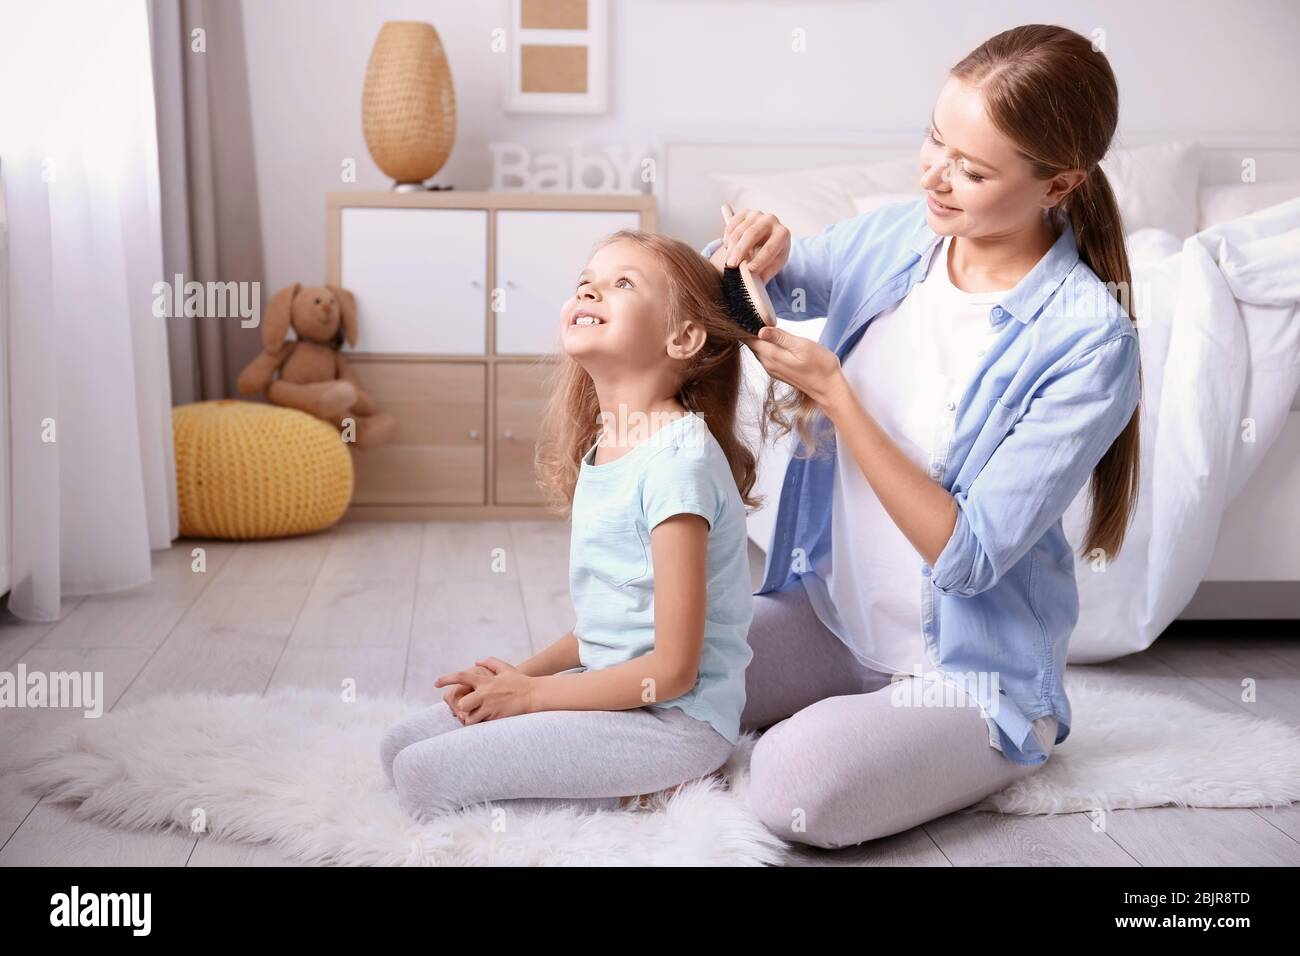 Happy mother combing daughter's hair in children room Stock Photo